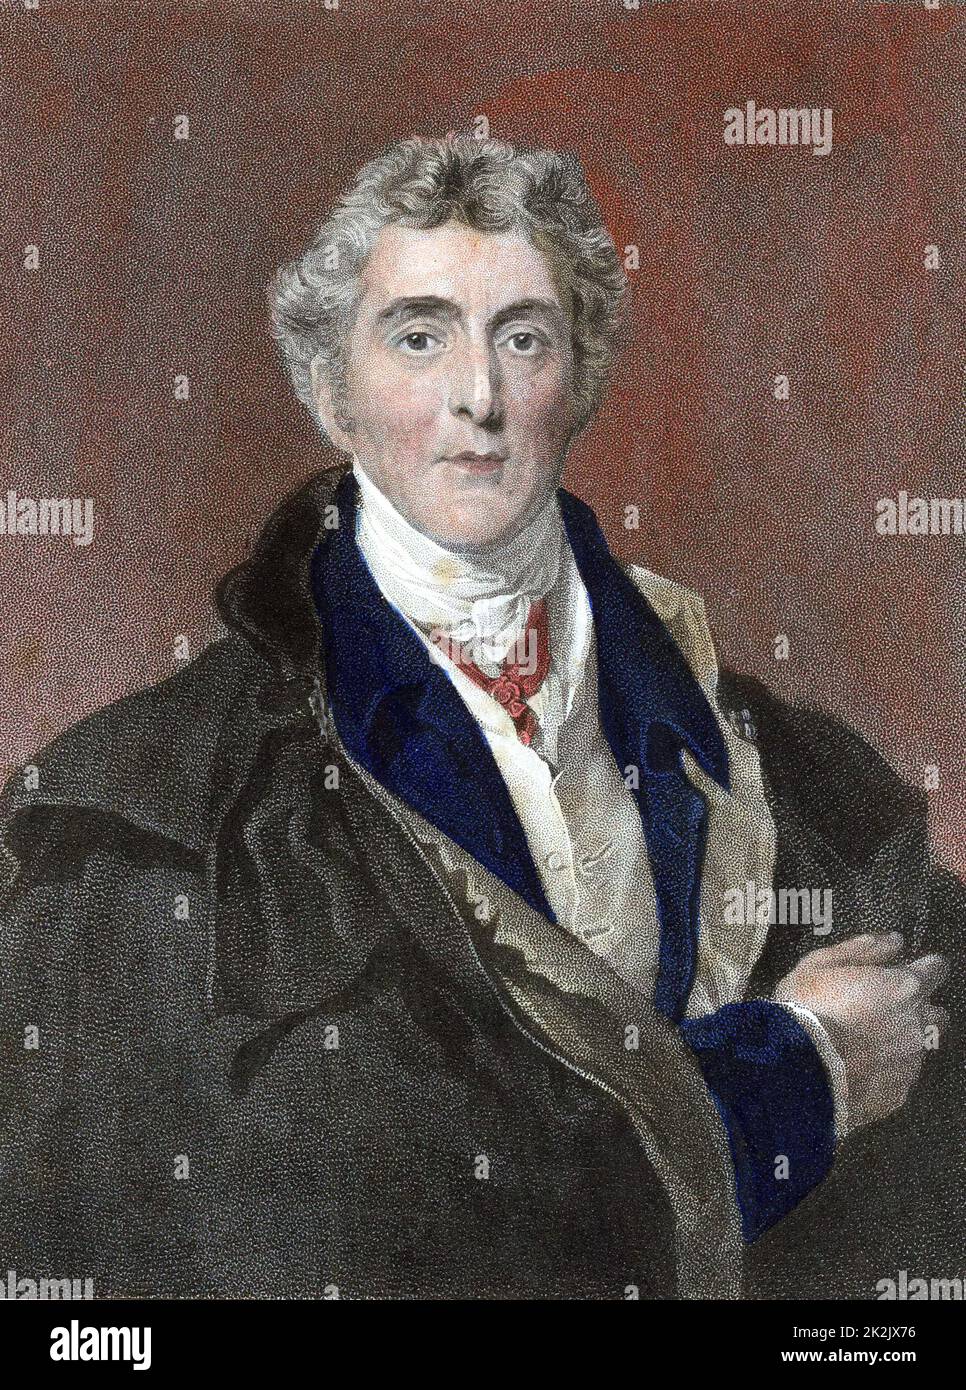 Arthur Wellesley 1st Duc de Wellington (1769-1852) soldat et homme d'État britannique. Battit Napoléon à Waterloo. Gravure de la couleur de la main après le portrait de Thomas Lawrence Banque D'Images